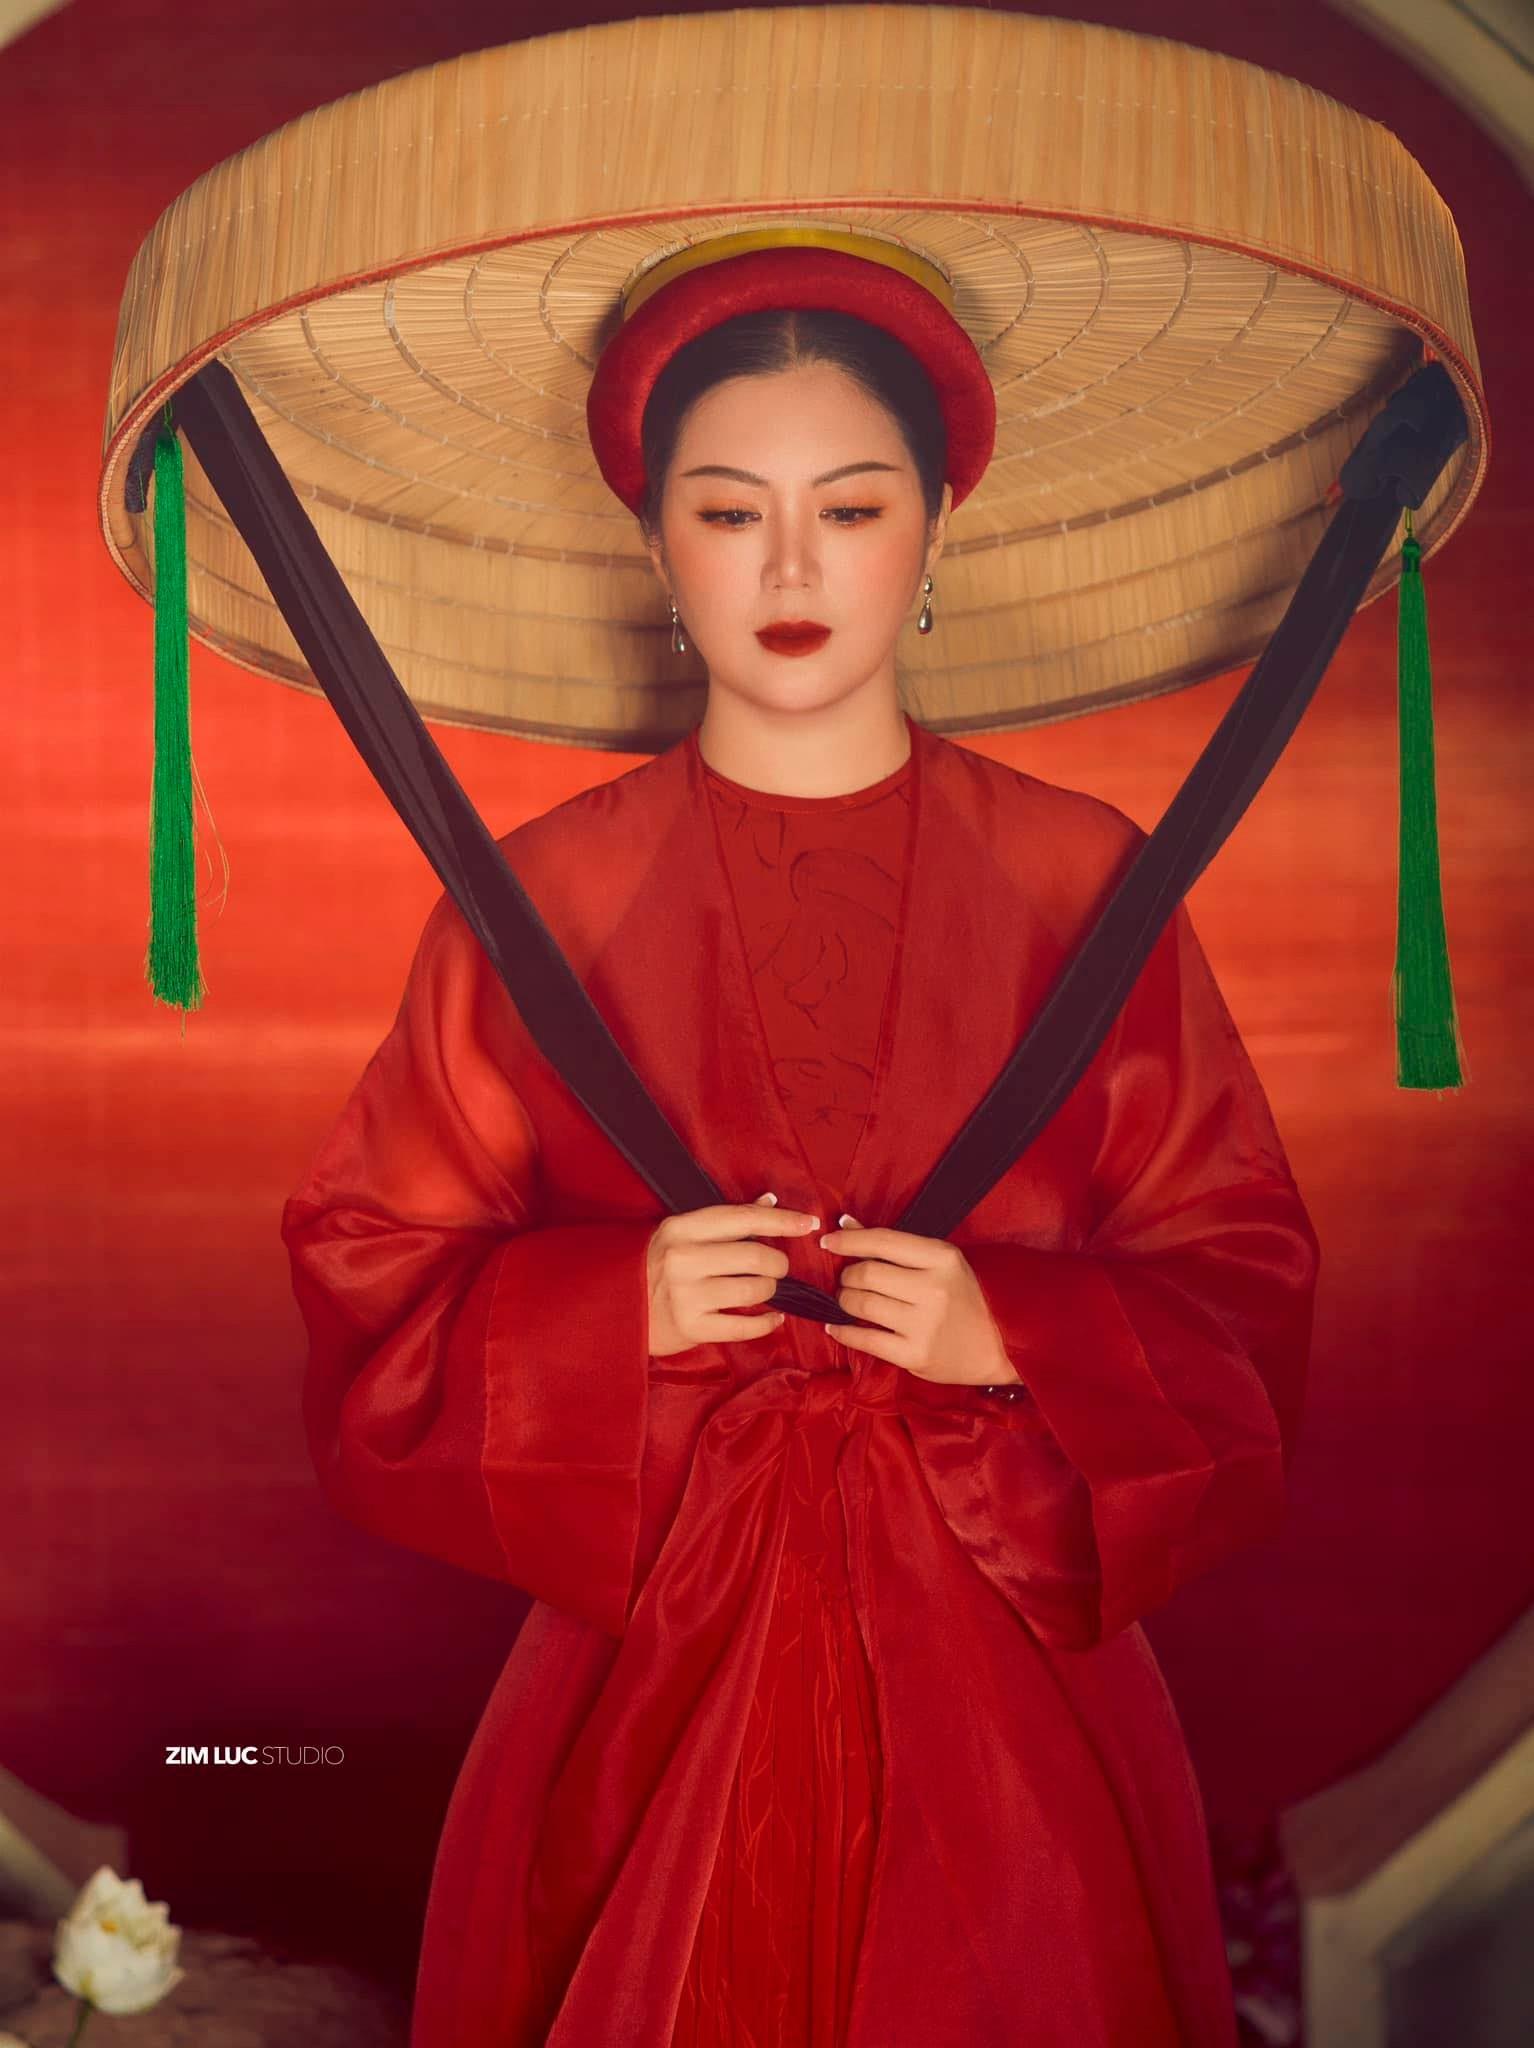 Ca sĩ Đinh Hiền Anh và tình yêu đặc biệt với trang phục truyền thống Việt  - Ảnh 9.